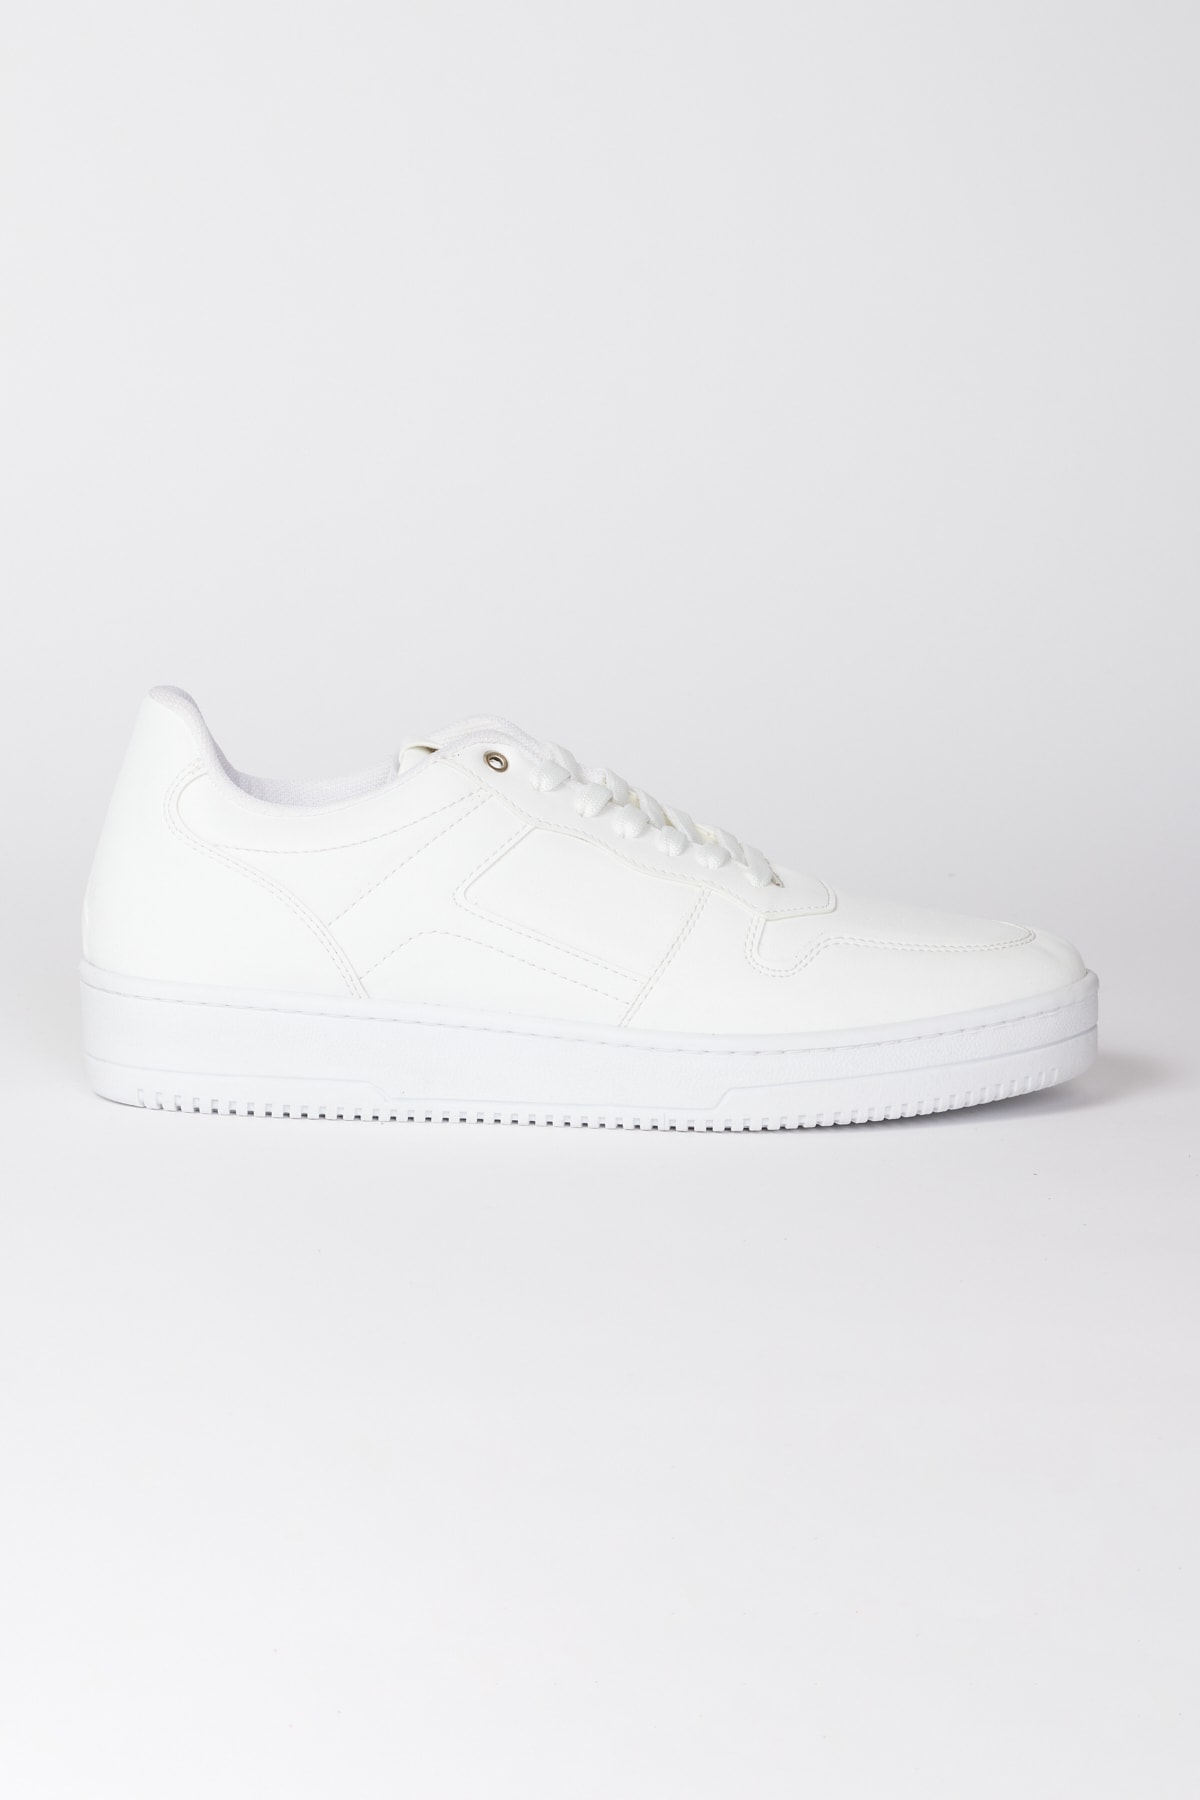 AC&Co / Altınyıldız Classics Men's White Lace-Up Comfortable Sole Casual Sneaker Shoes